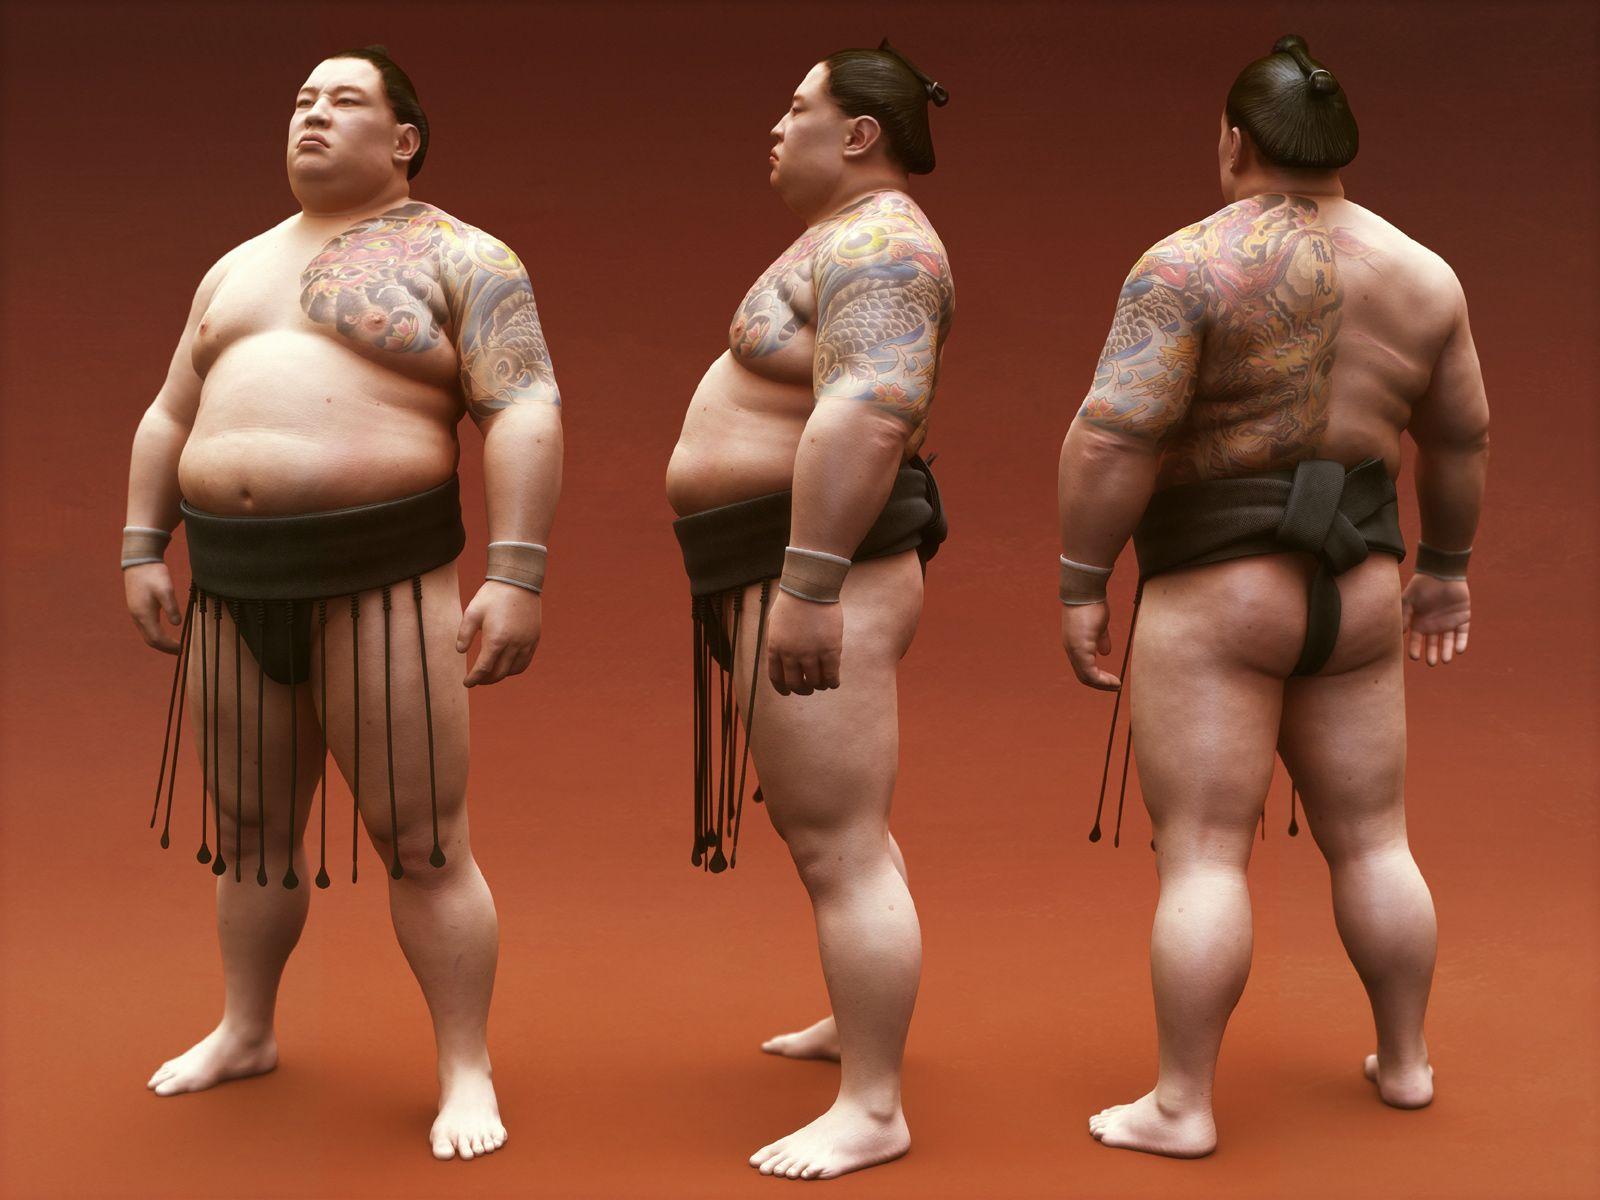 Sumo Wrestler Wallpaper HD Collection. Sumo wrestler